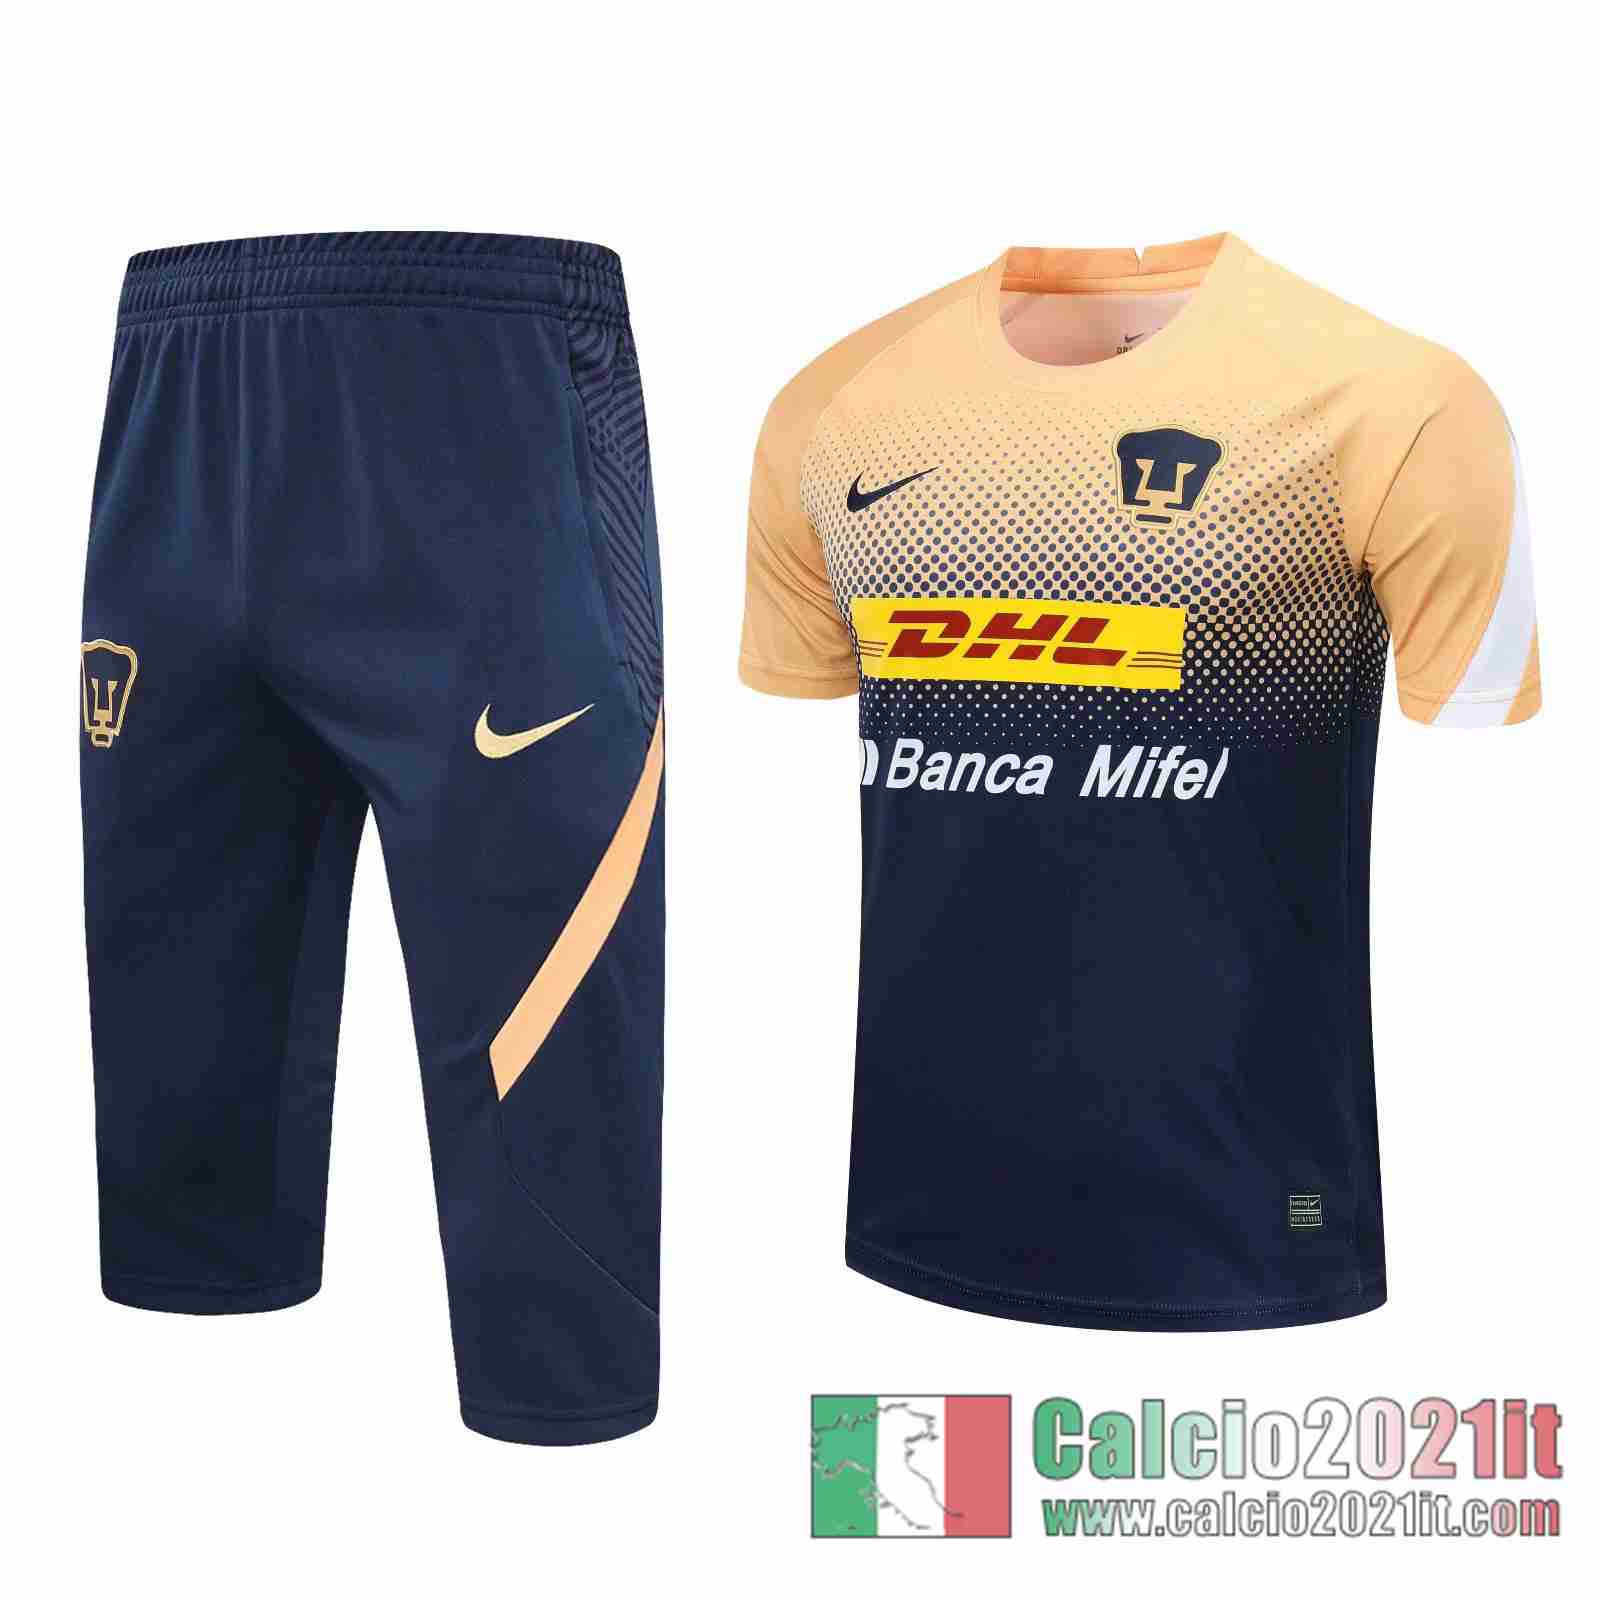 Pumas Magliette Tuta Calcio Blu navy / giallo naturale 2020 2021 T23